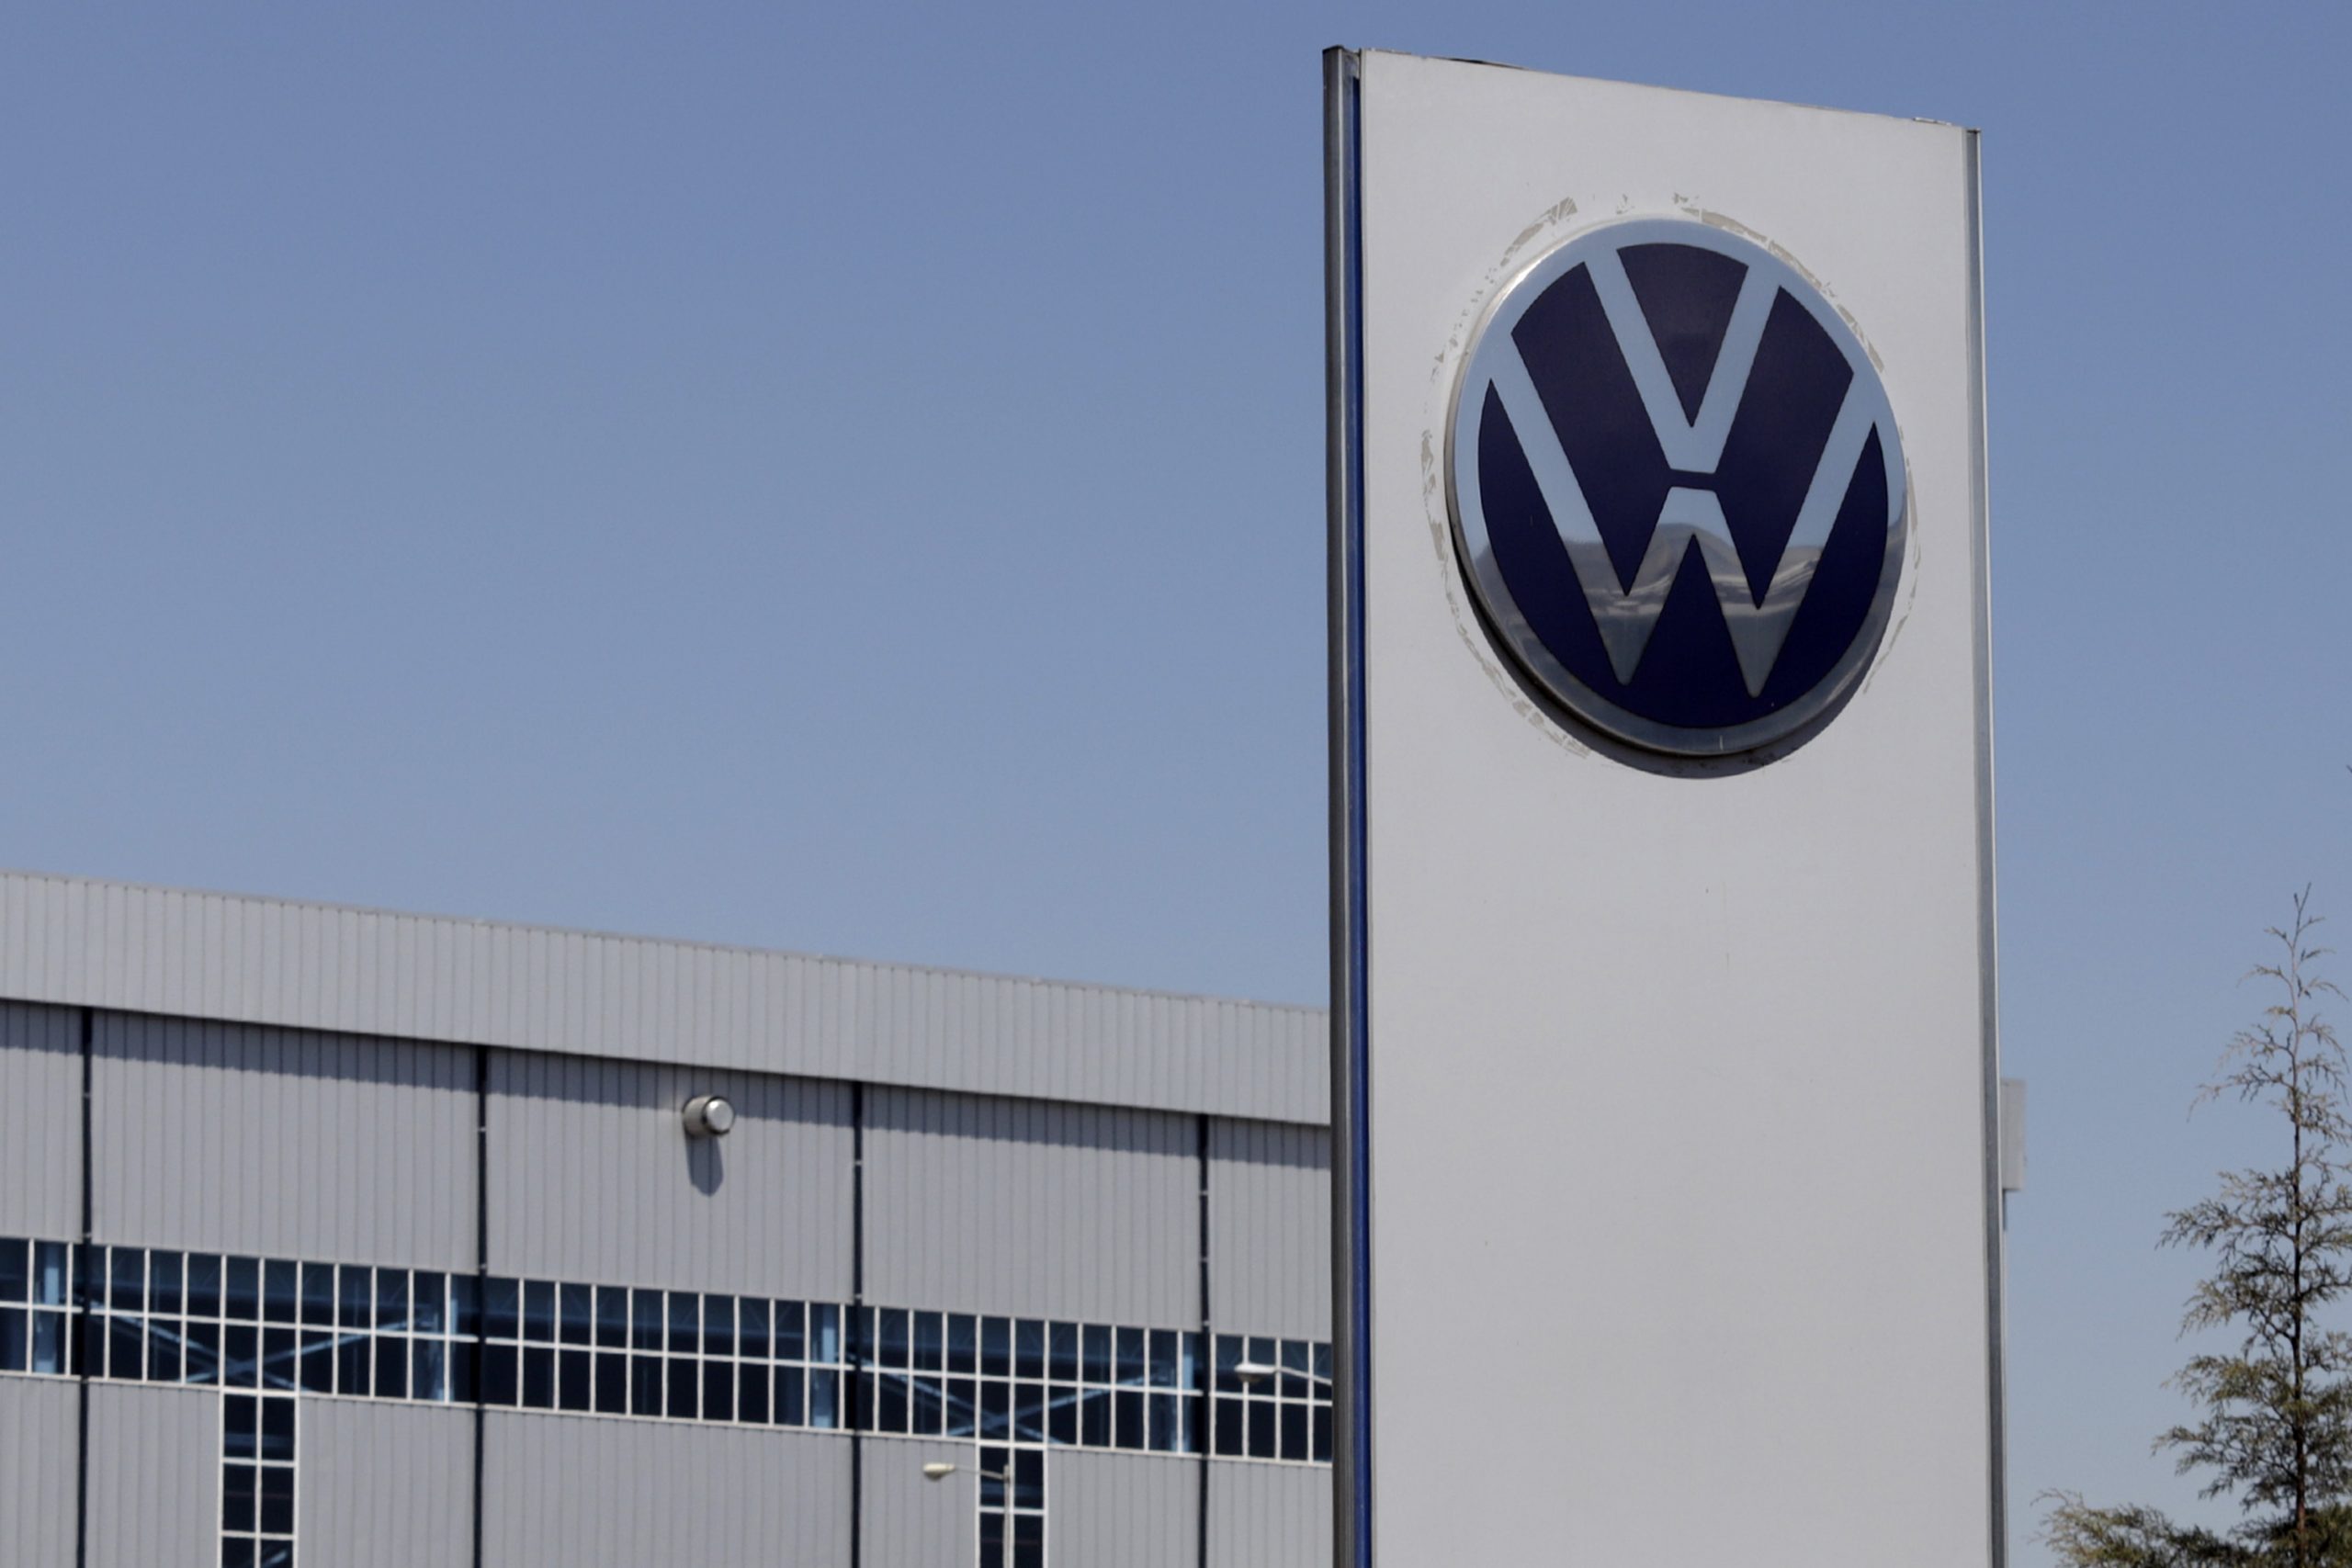 Venta de vehículos pesados de VW repunta 98.7%